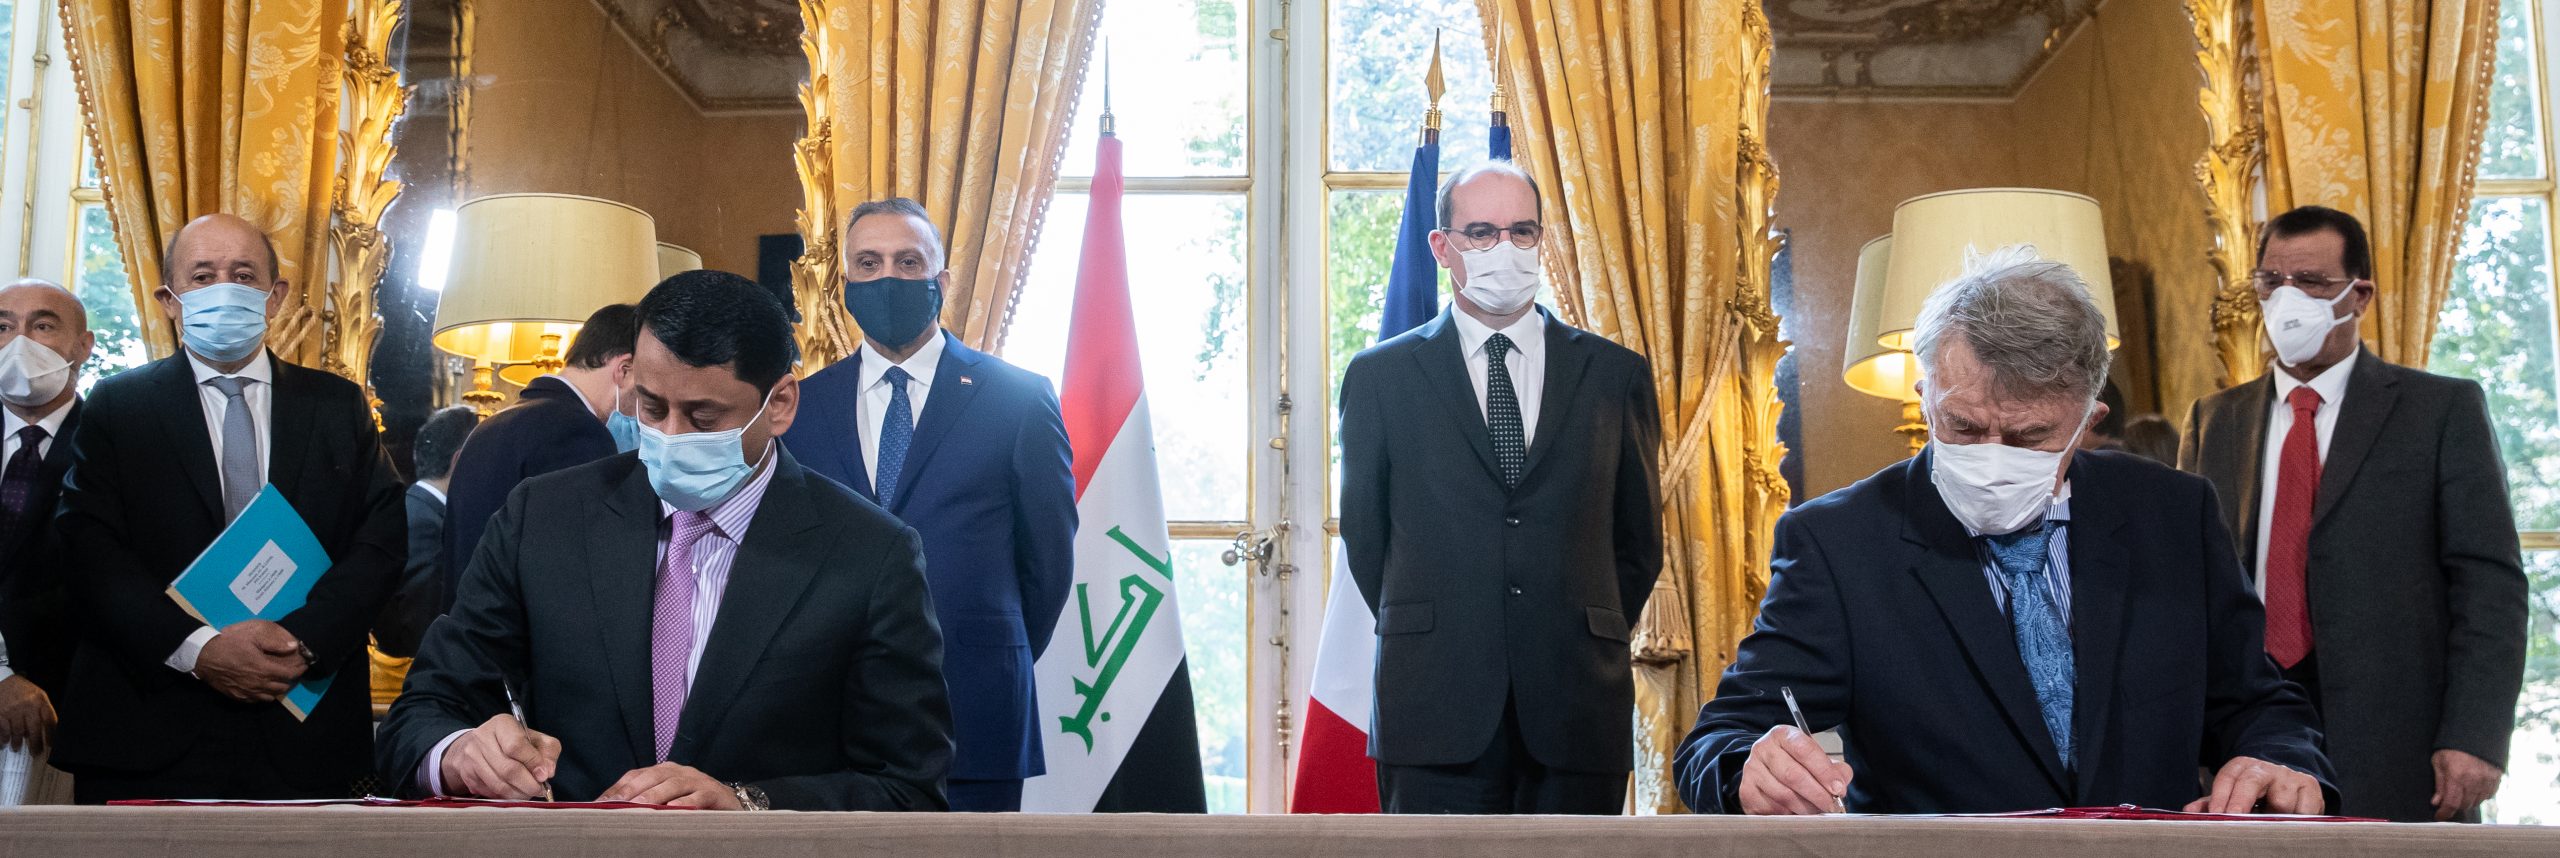 Signature d’un mémorandum entre le ministère de l’Enseignement supérieur irakien et la Conférence des présidents d’université